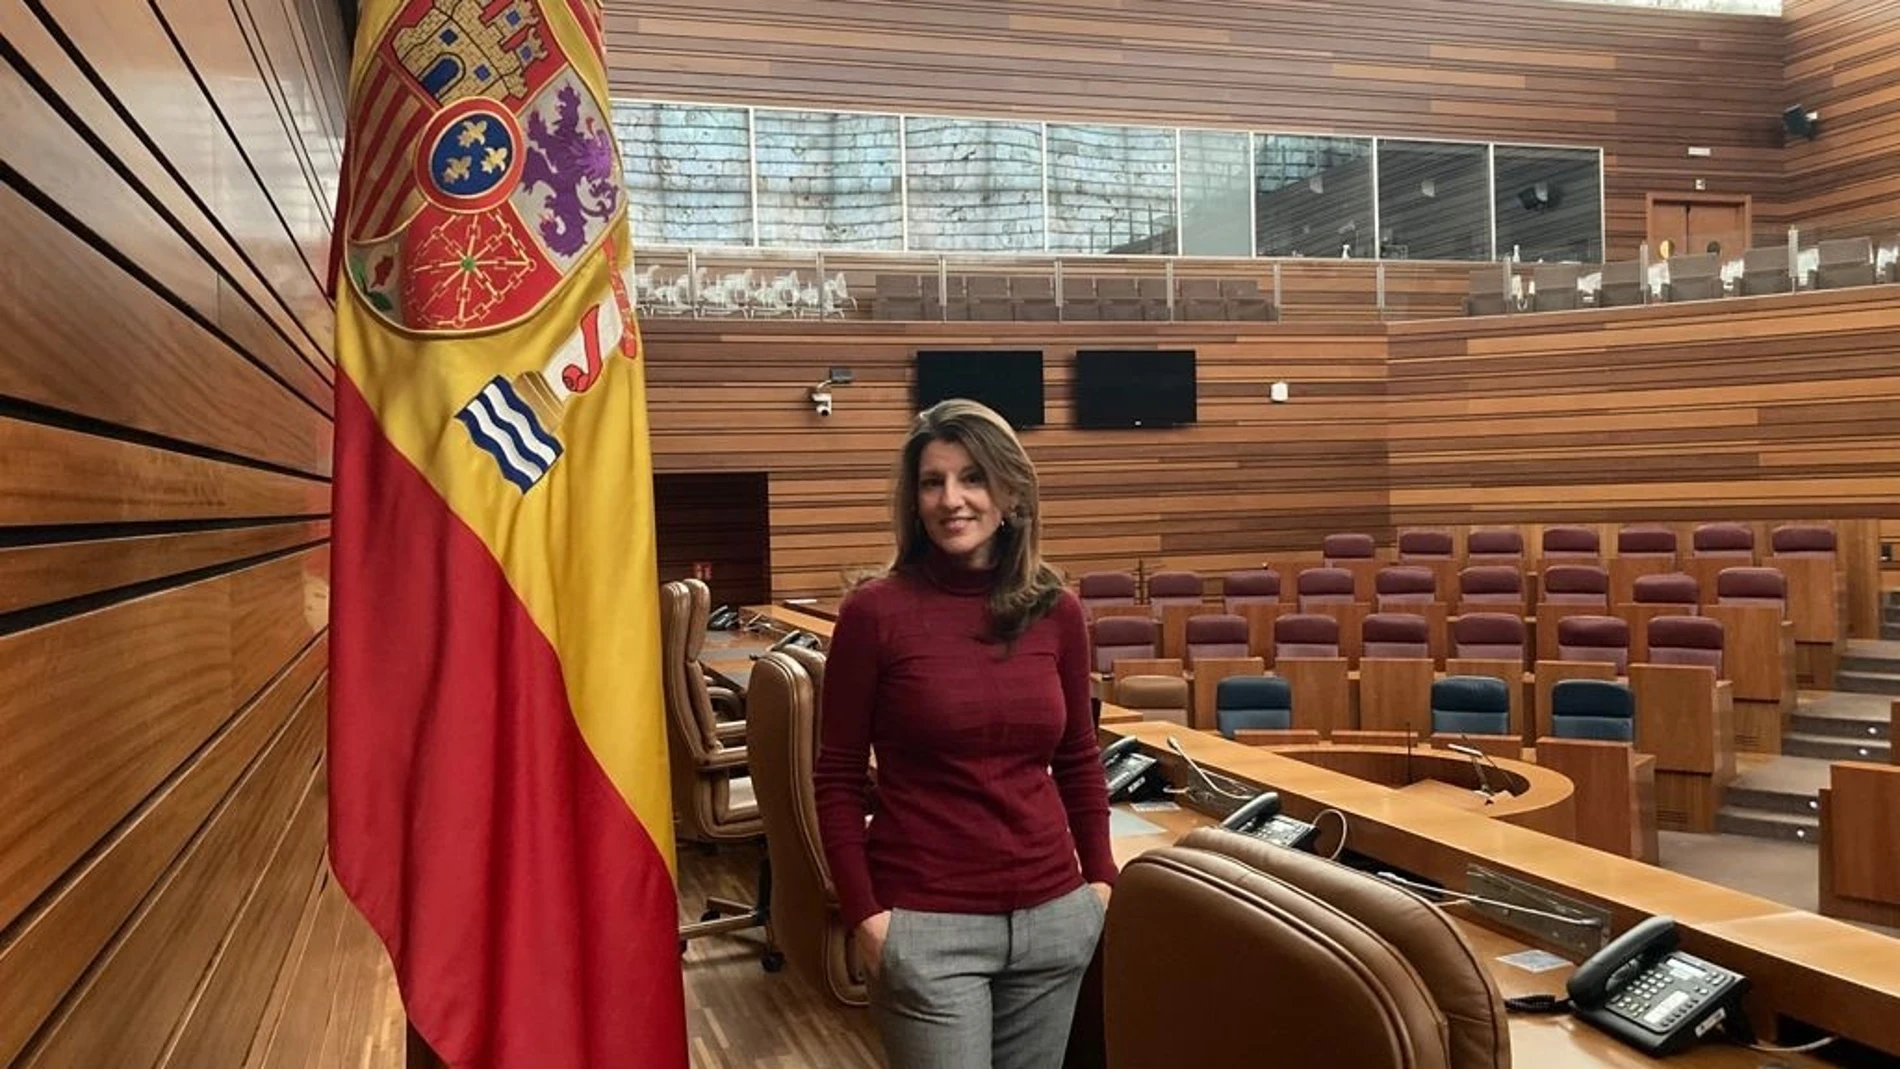 La procuradora por Valladolid Fátima Pinacho sustituirá a Jesús García-Conde como representante de Vox en el Parlamento regional.VOX04/02/2021